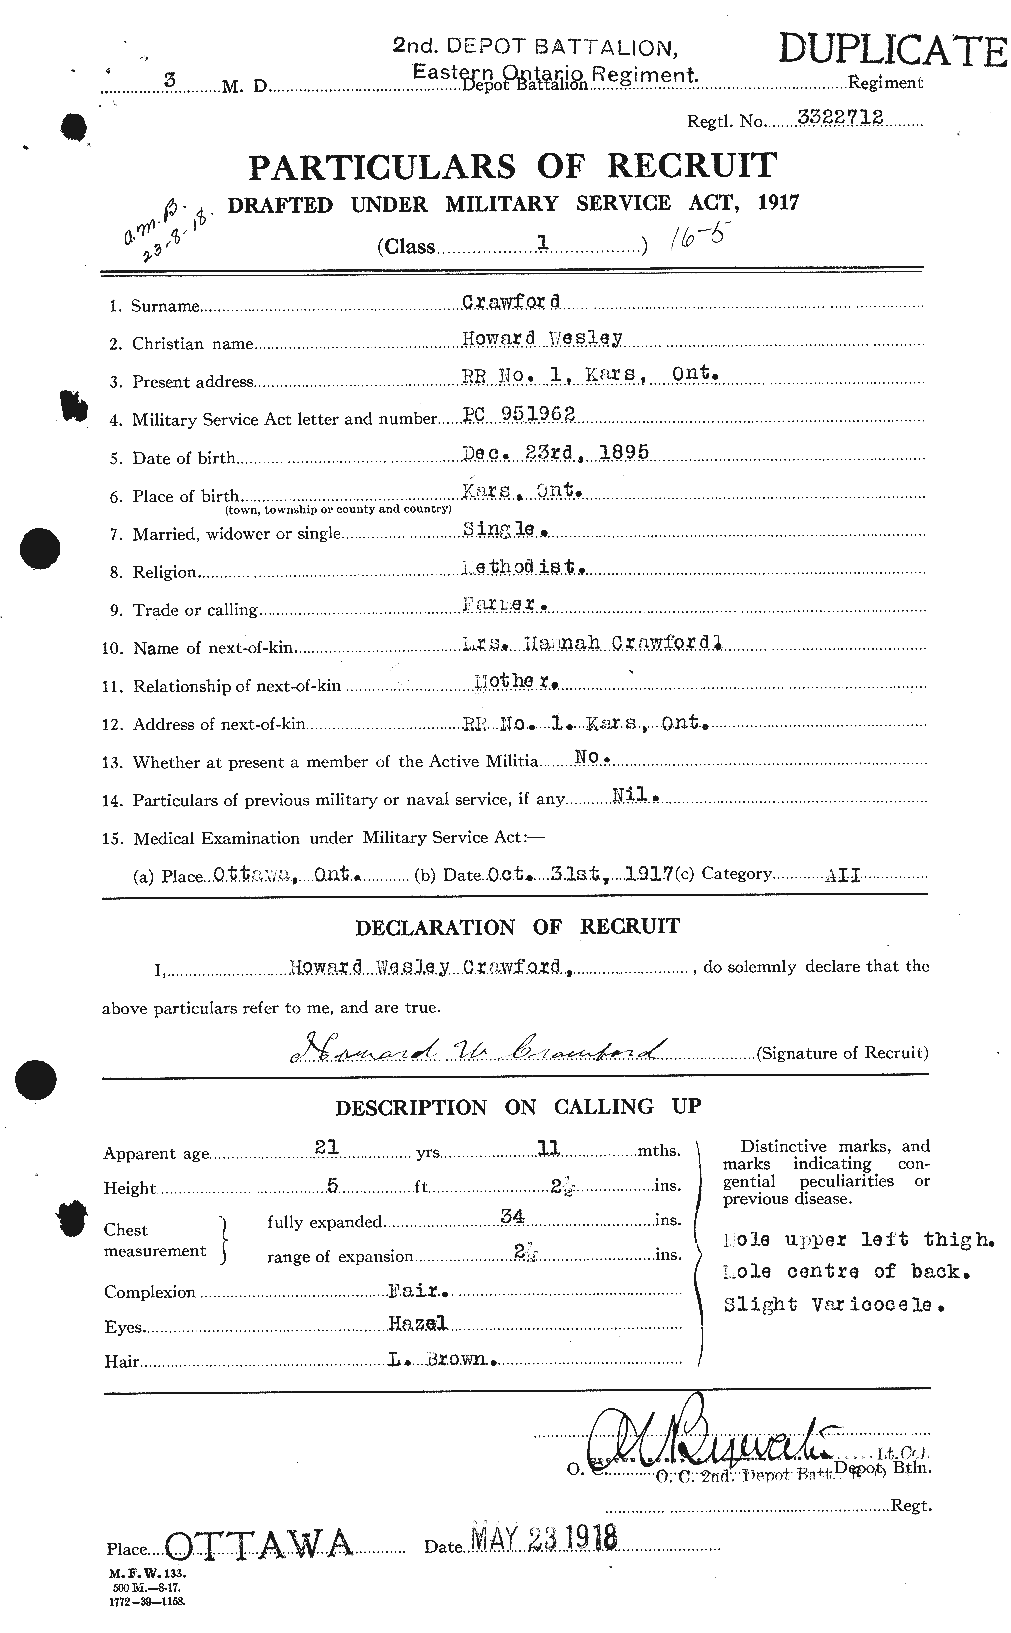 Dossiers du Personnel de la Première Guerre mondiale - CEC 060560a